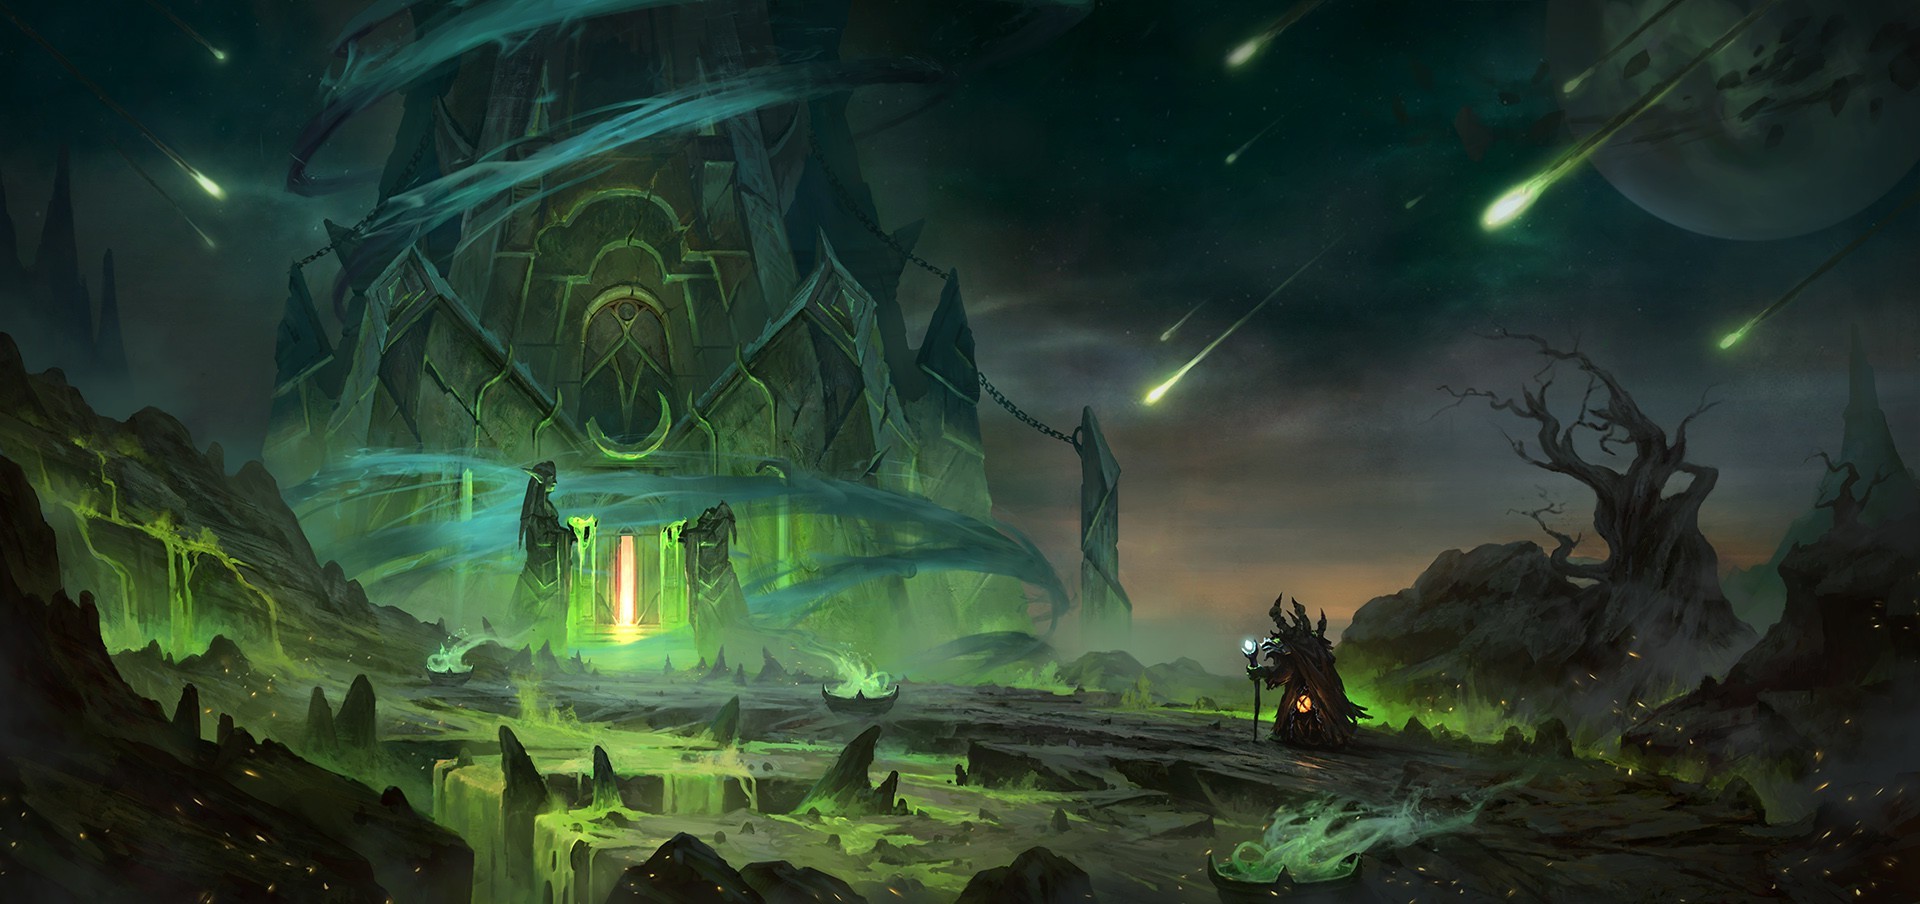 fantasy Art, World Of Warcraft Wallpaper